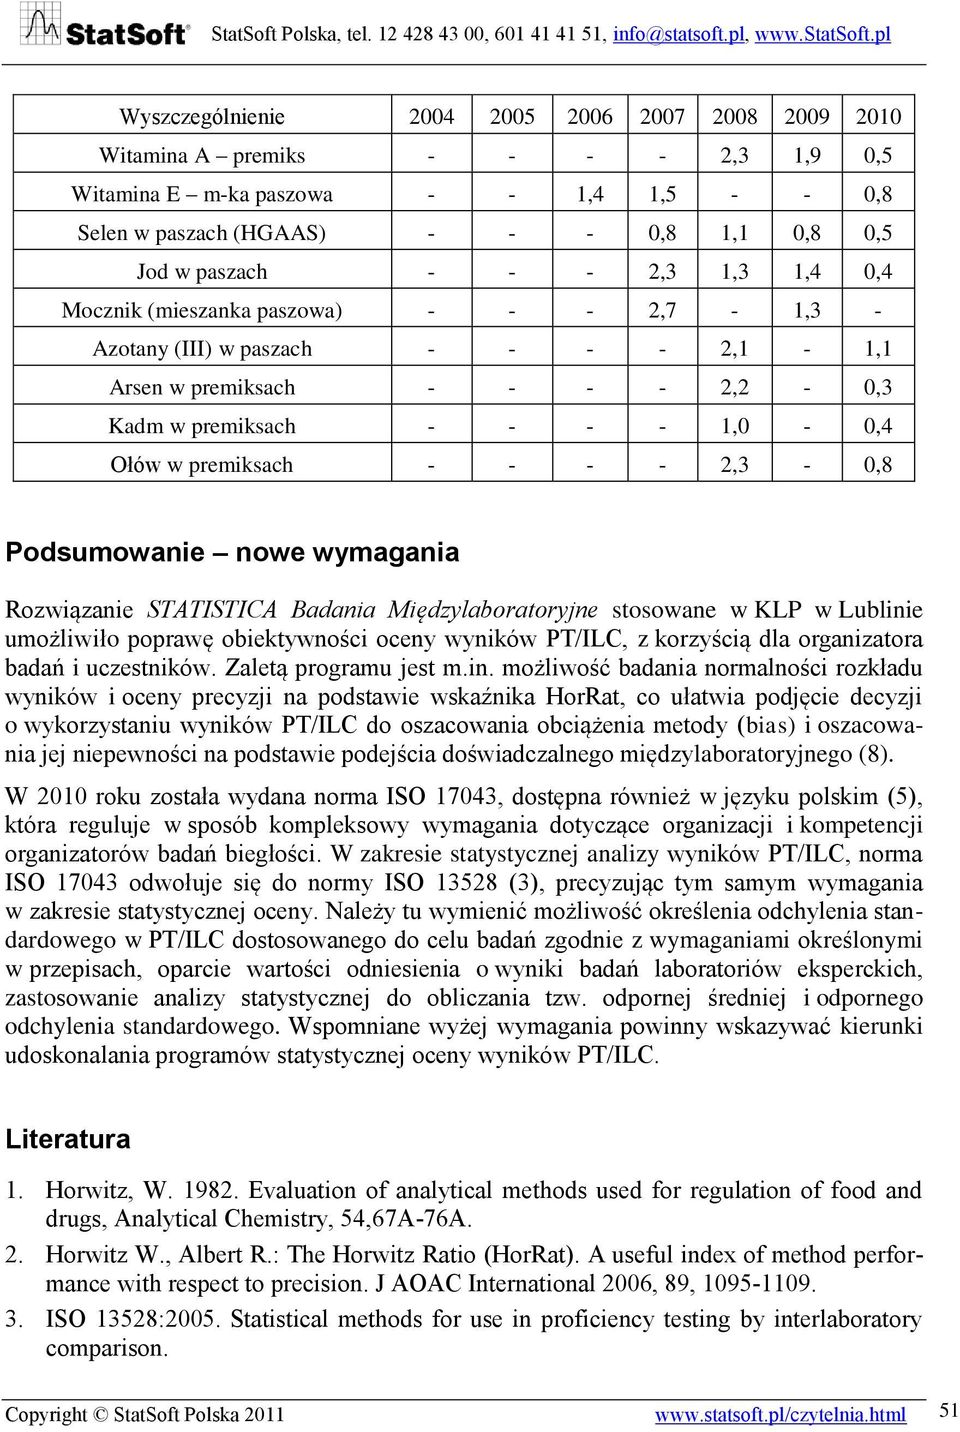 2,3-0,8 Podsumowanie nowe wymagania Rozwiązanie STATISTICA Badania Międzylaboratoryjne stosowane w KLP w Lublinie umożliwiło poprawę obiektywności oceny wyników PT/ILC, z korzyścią dla organizatora